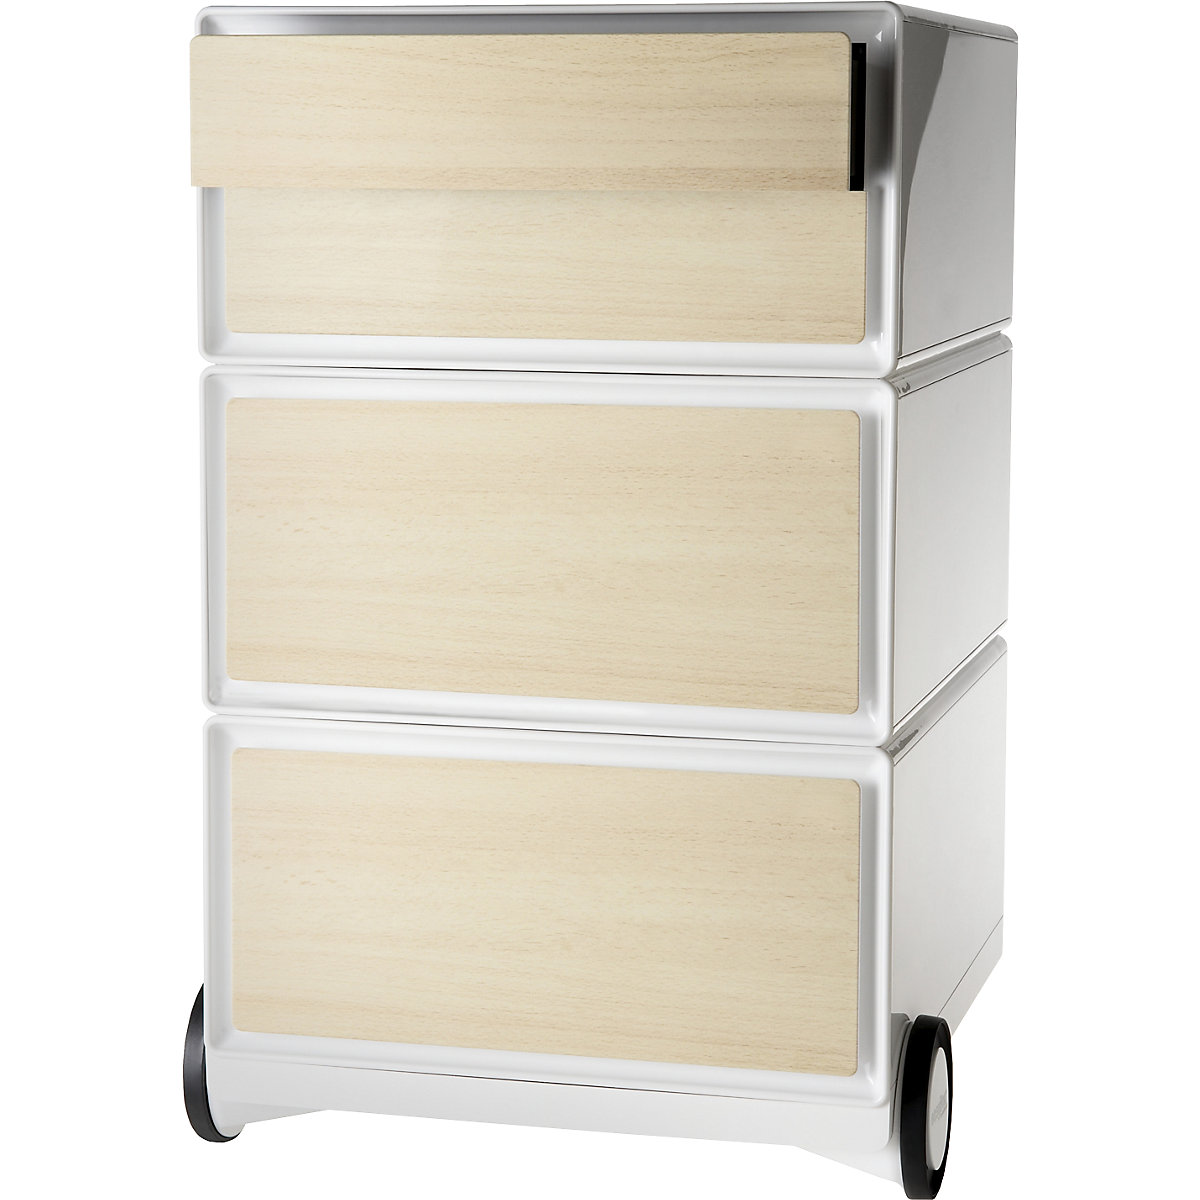 Pomični predalnik easyBox® – Paperflow, 2 predala, 2 nižja predala, bele barve / bukev-10